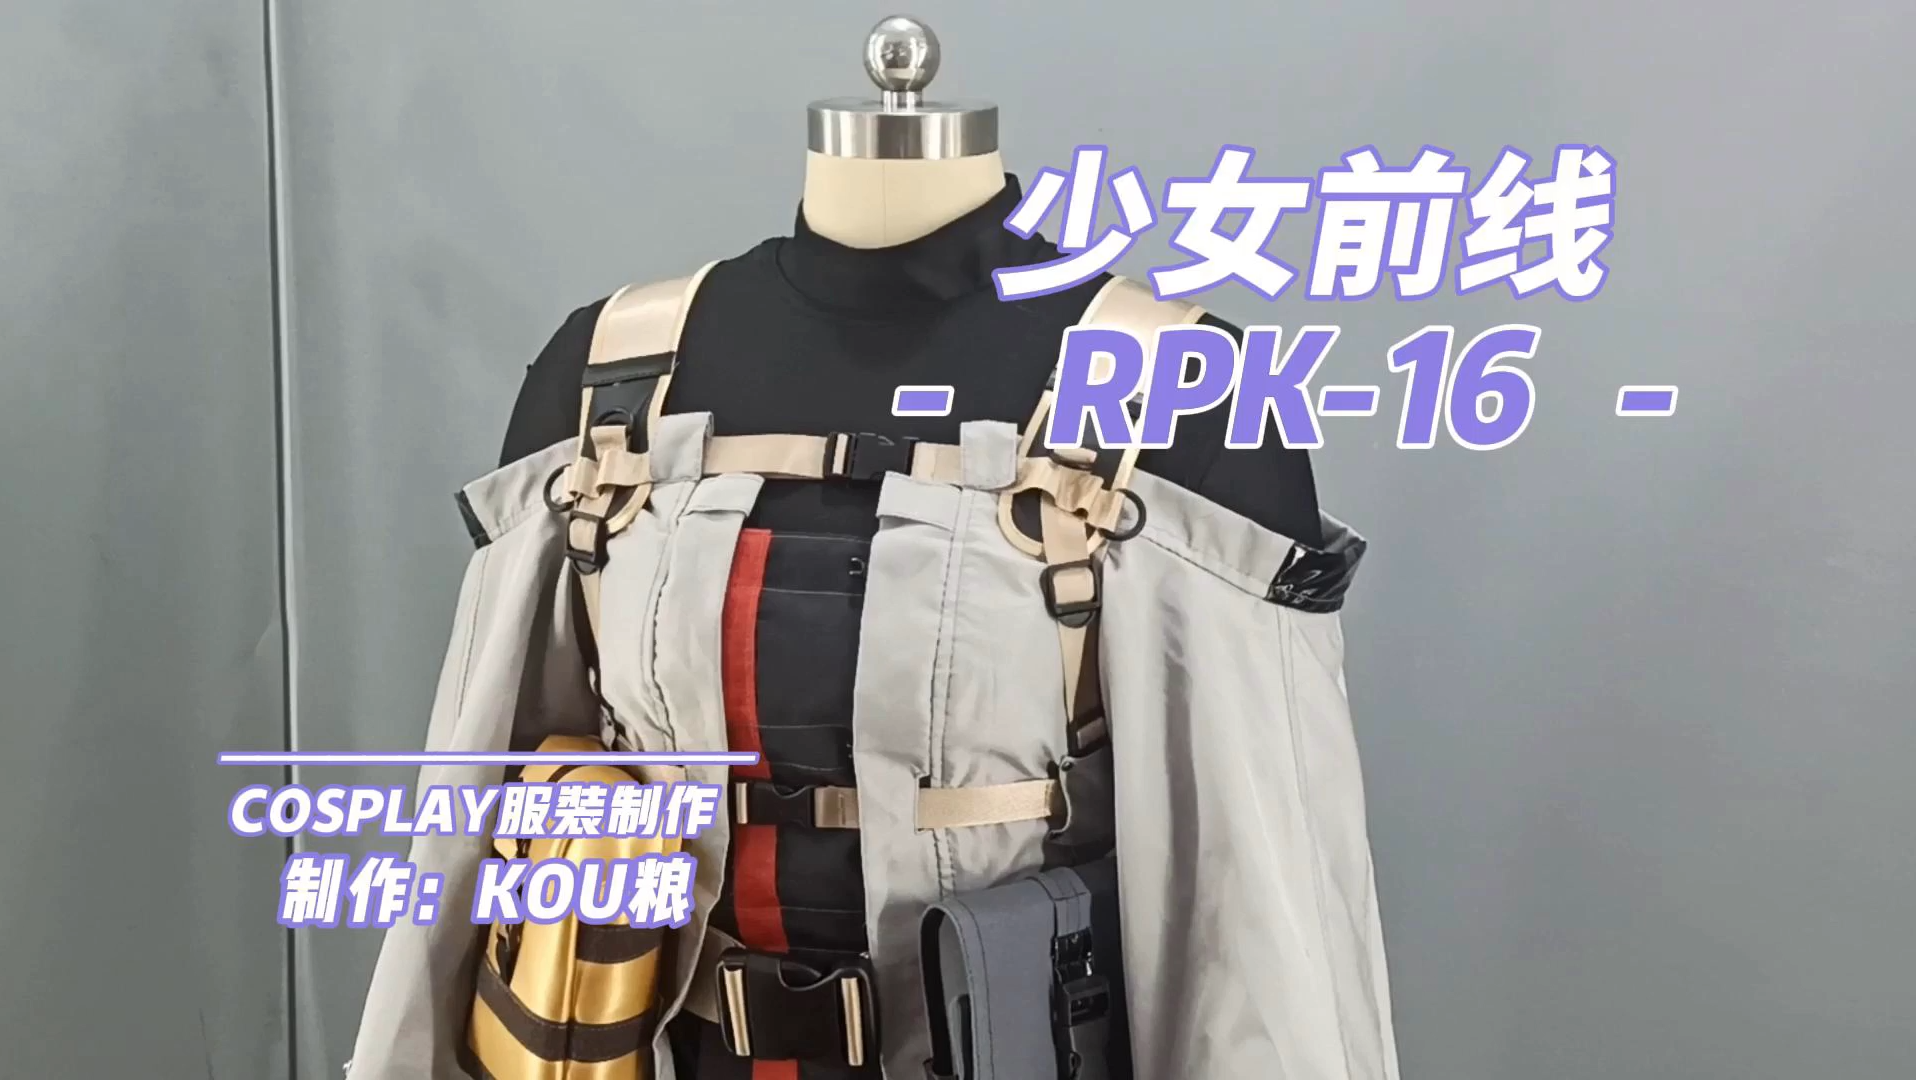 少女前线RPK16的cosplay服装制作